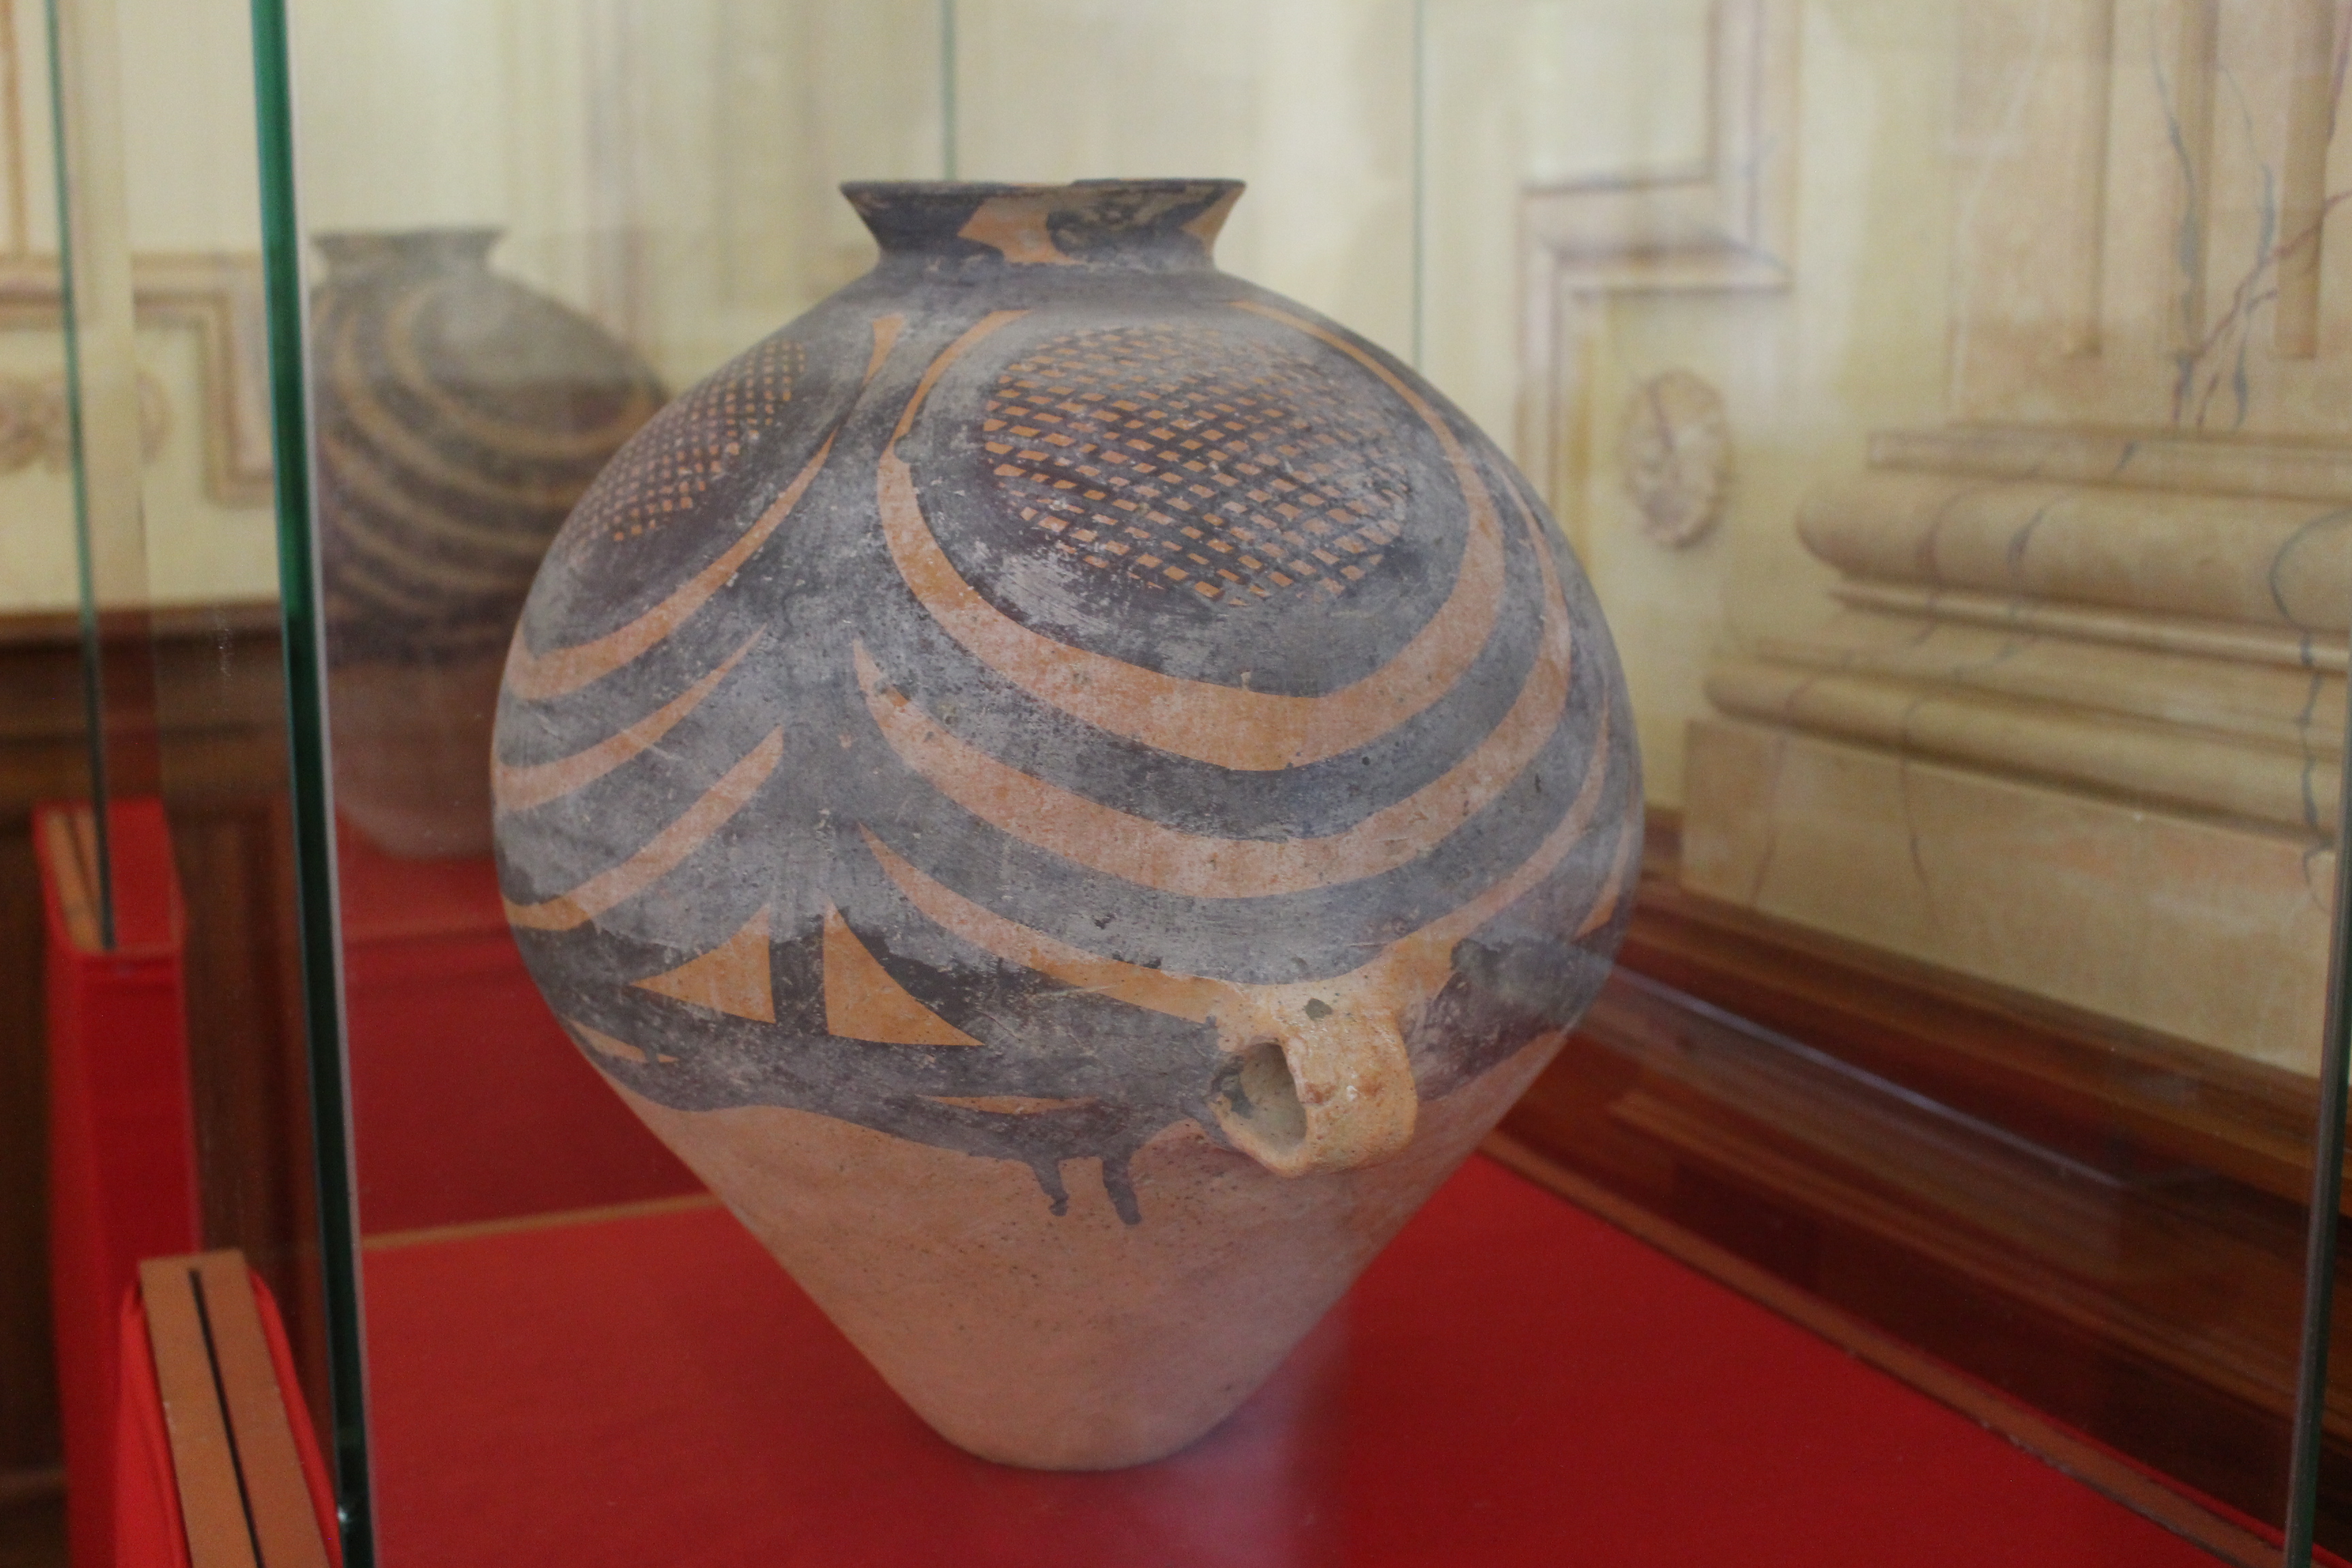 Des antiquités exposées à la présidence, certaines ont 10 000 ans